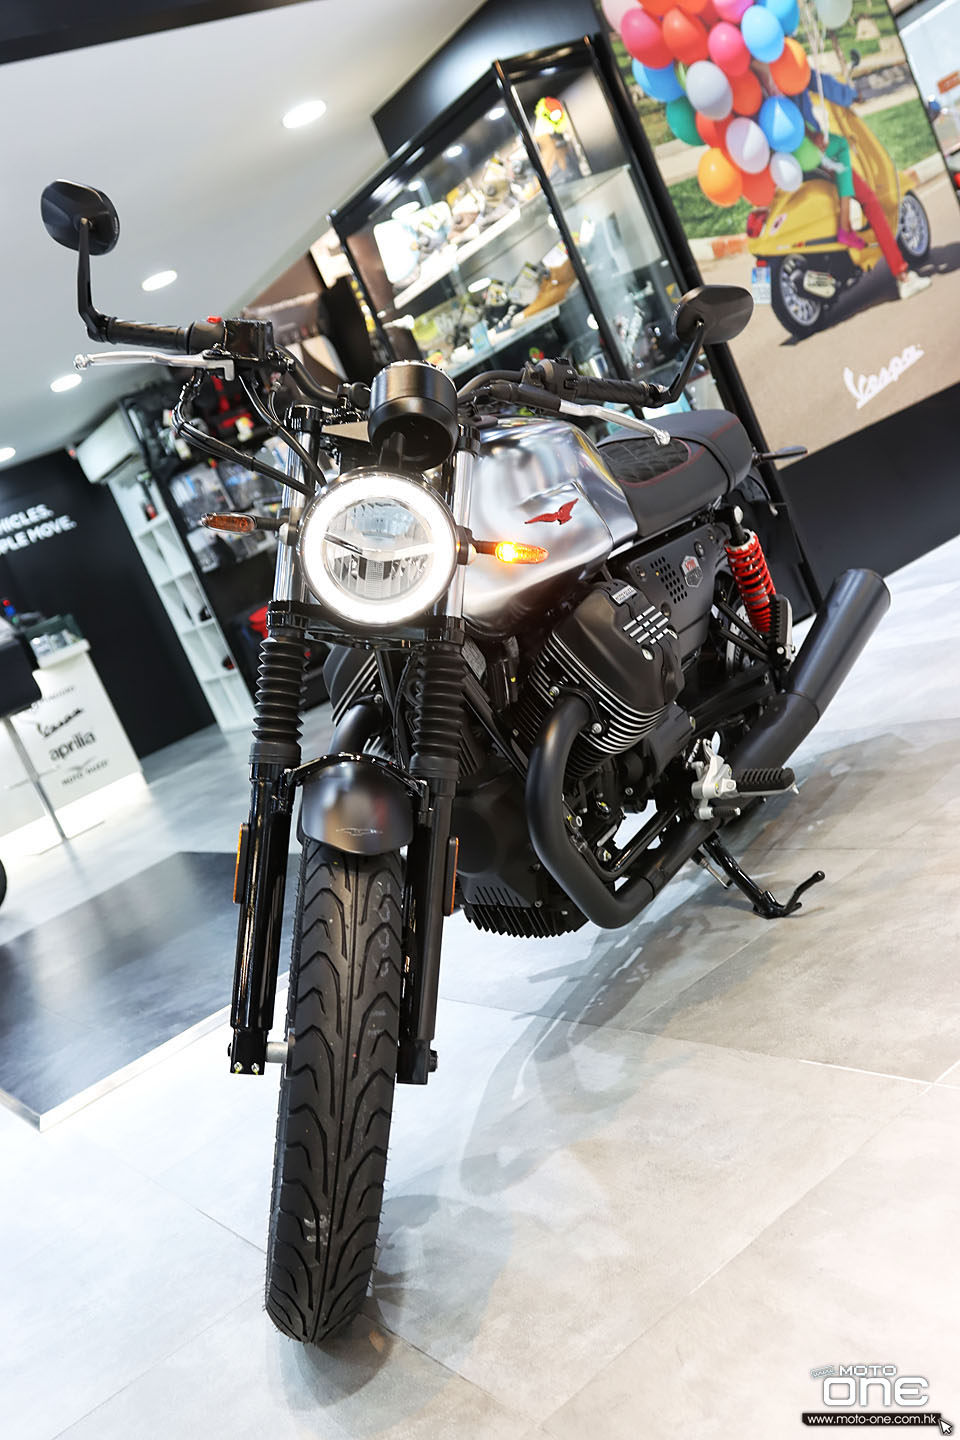 2020 Moto Guzzi V7 III Stone S